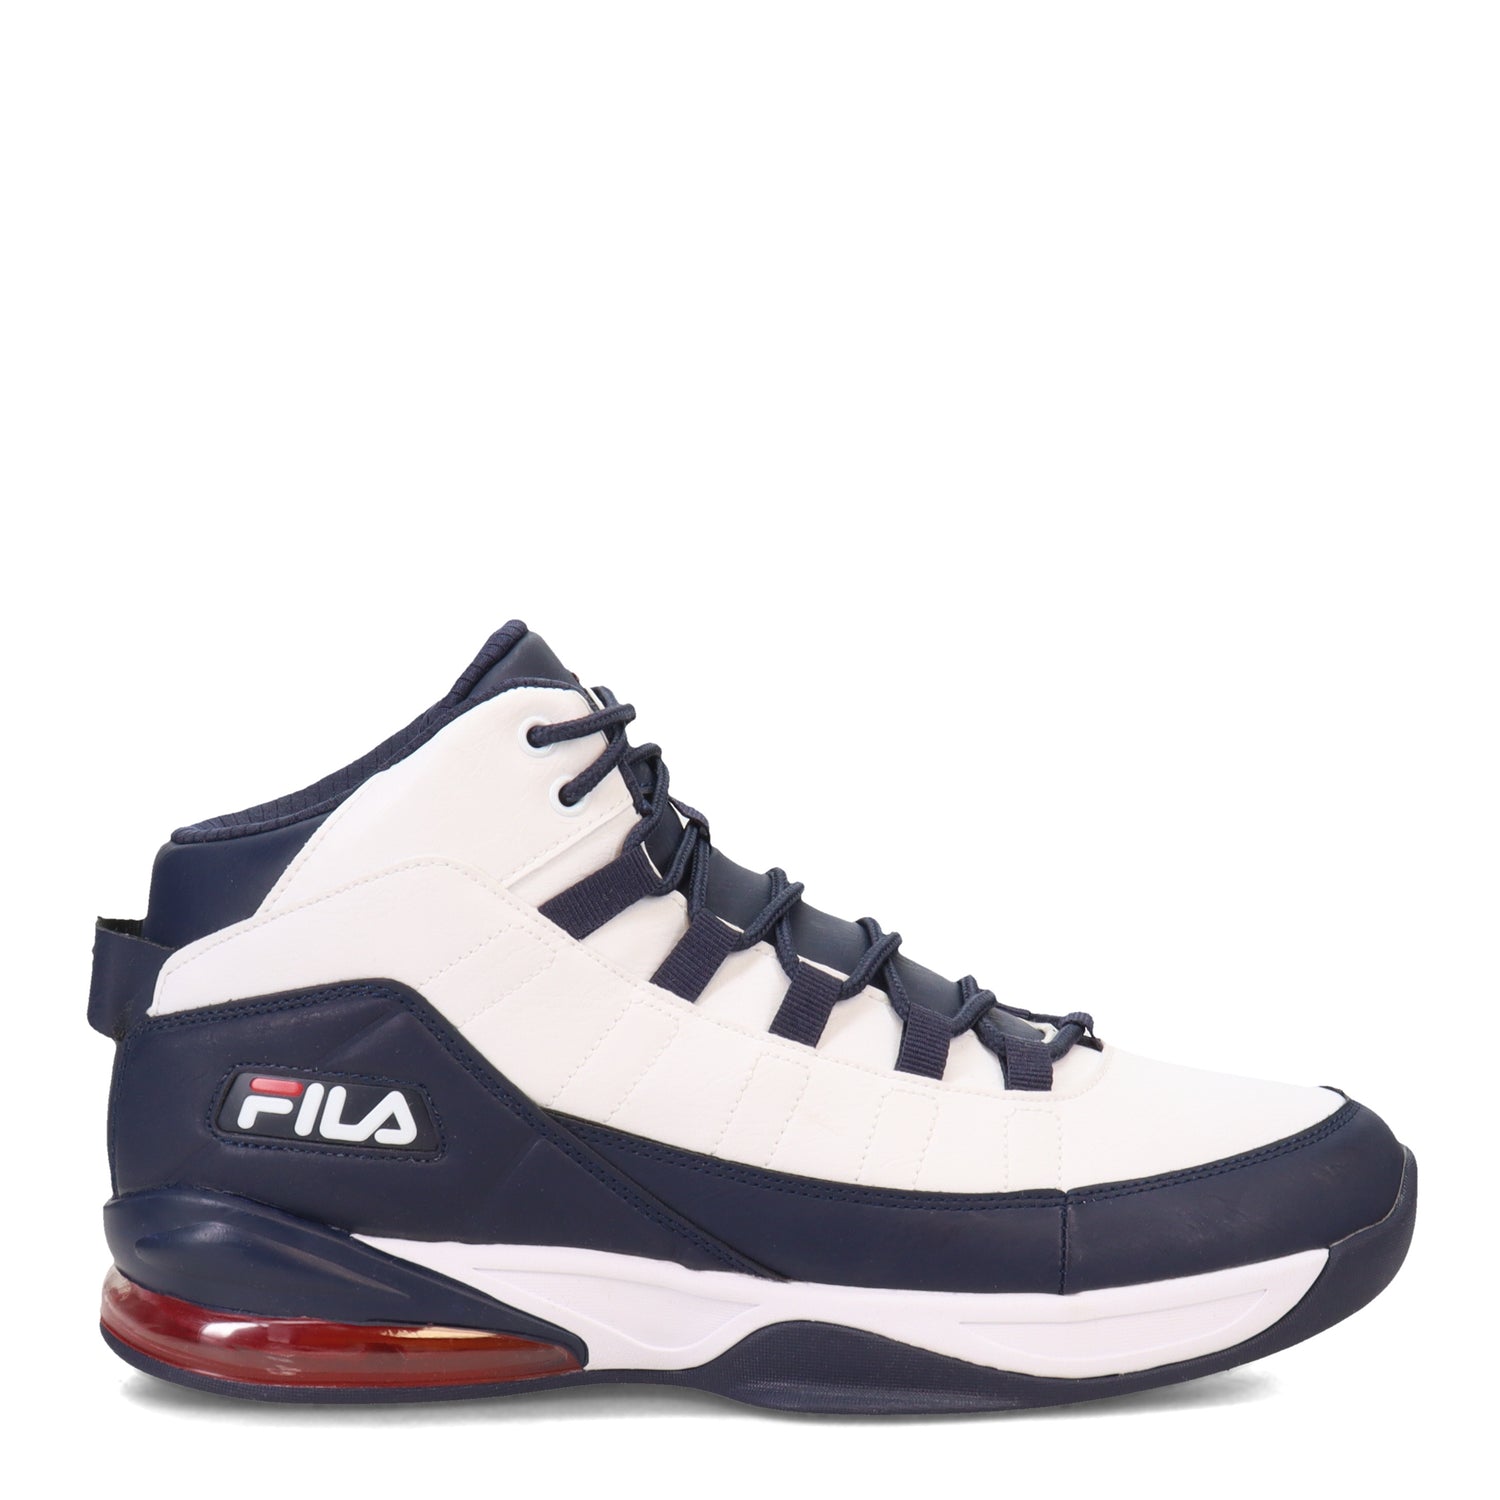 Fila Basketball Shoe – Peltz Shoes